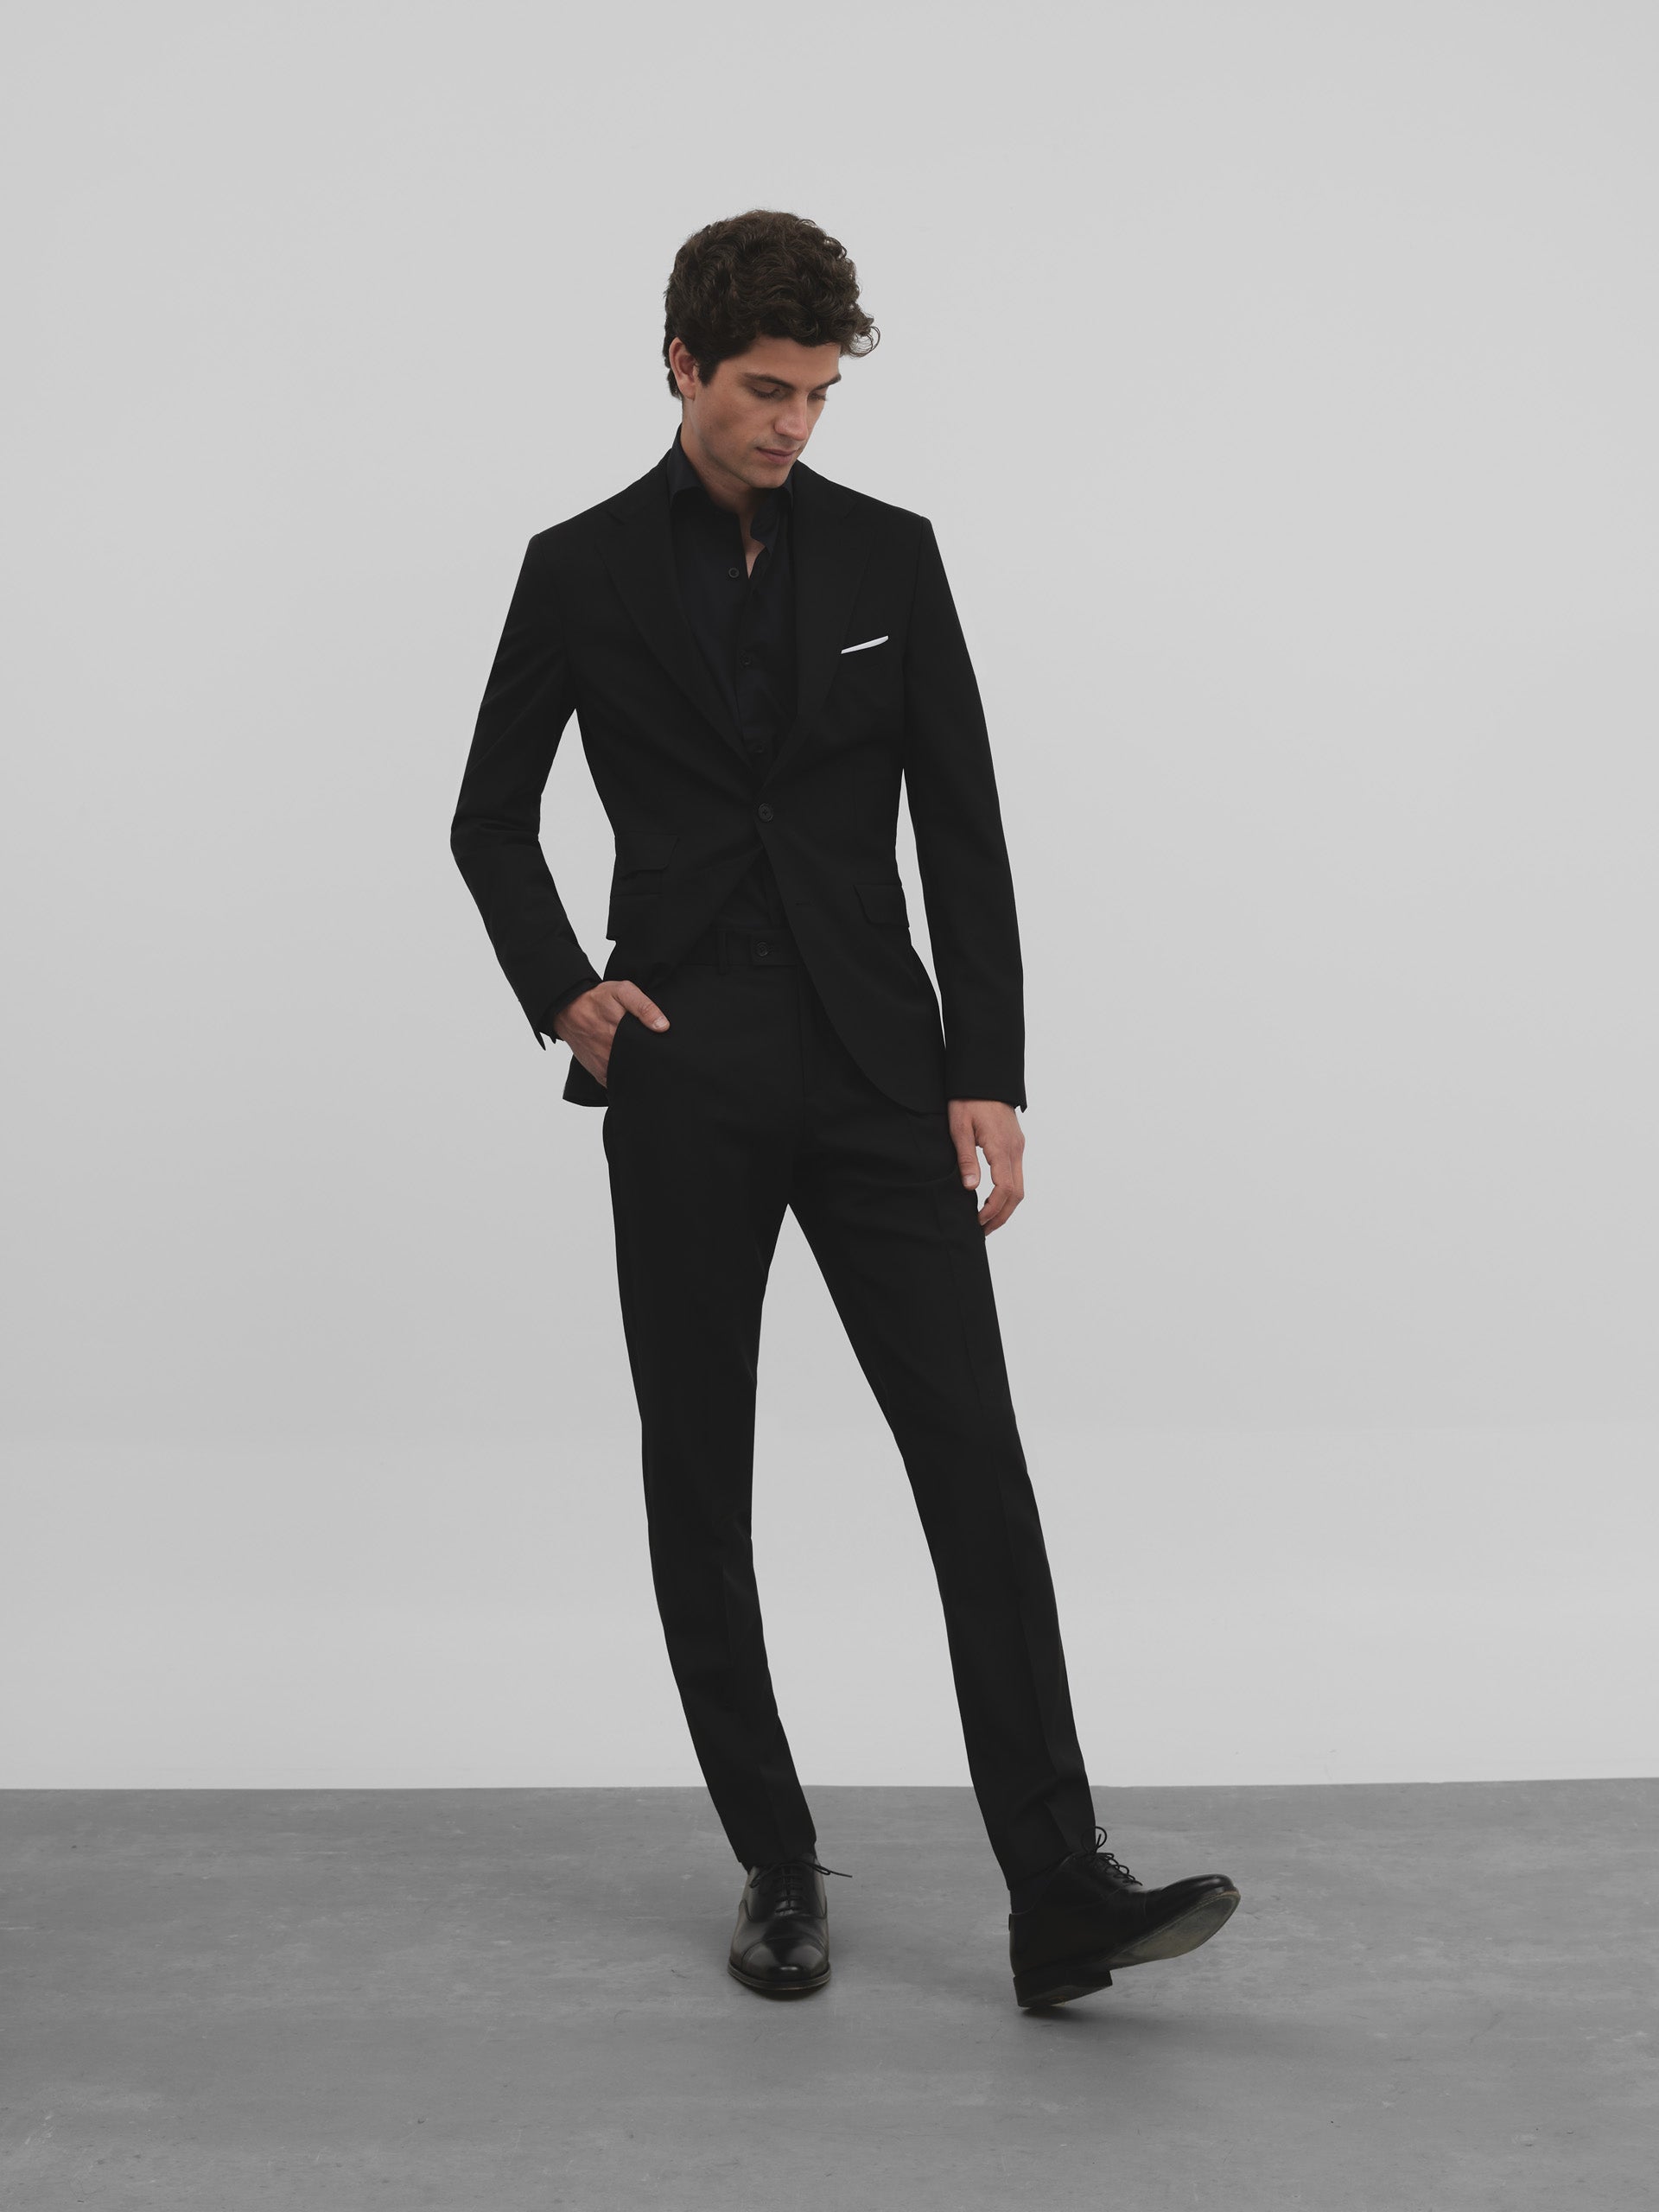 Black classic suit jacket